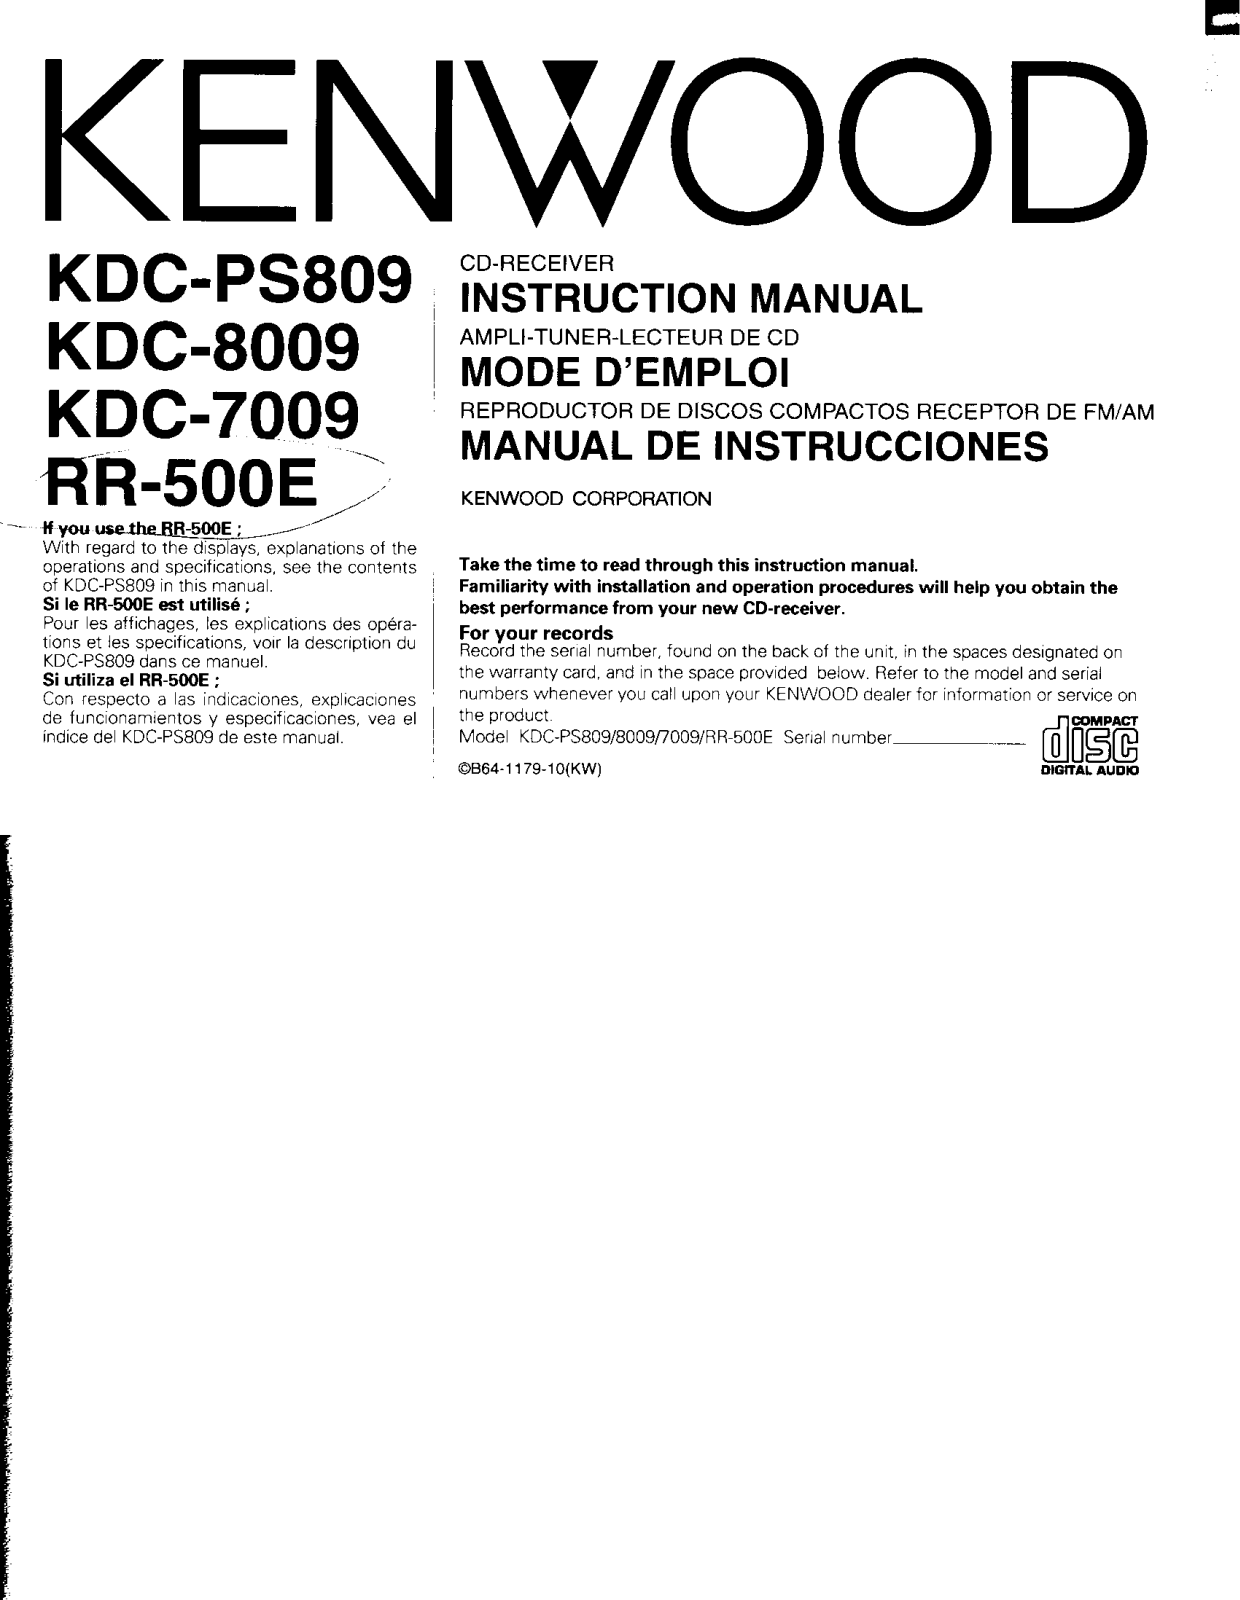 Kenwood RR-500E, KDC-PS809, KDC-8009, KDC-7009 User Manual